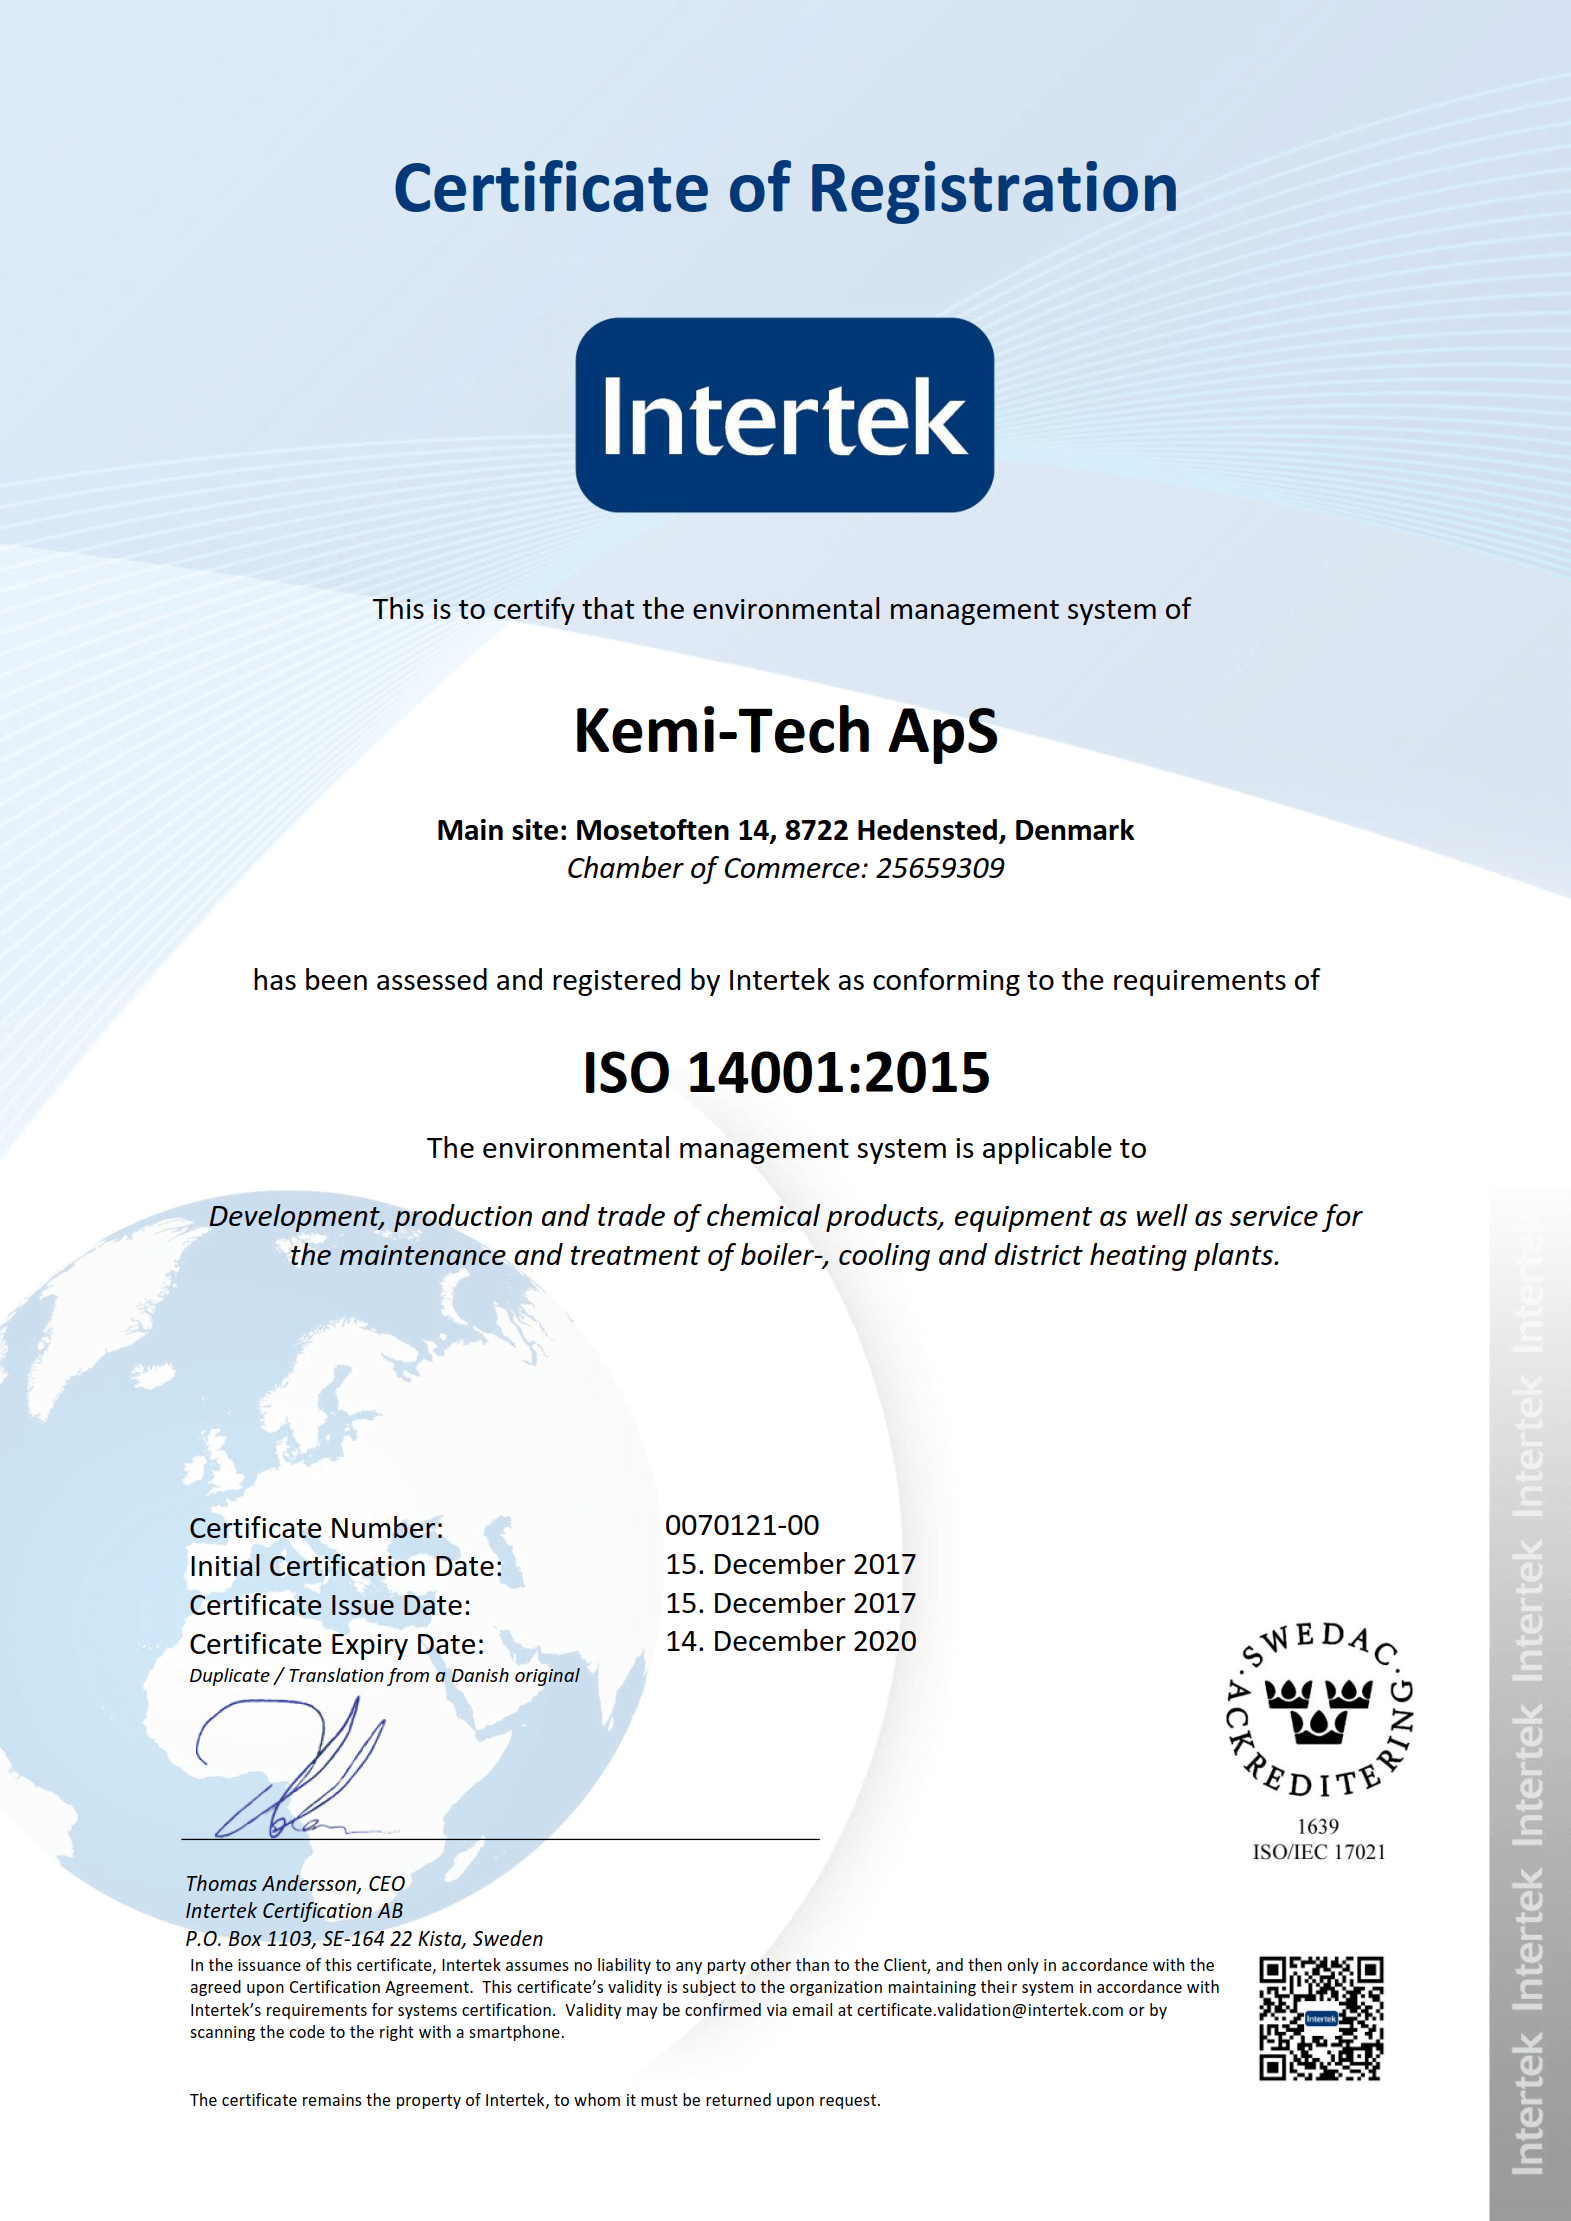 Kemi-tech ApS ISO14001:2015 certificate